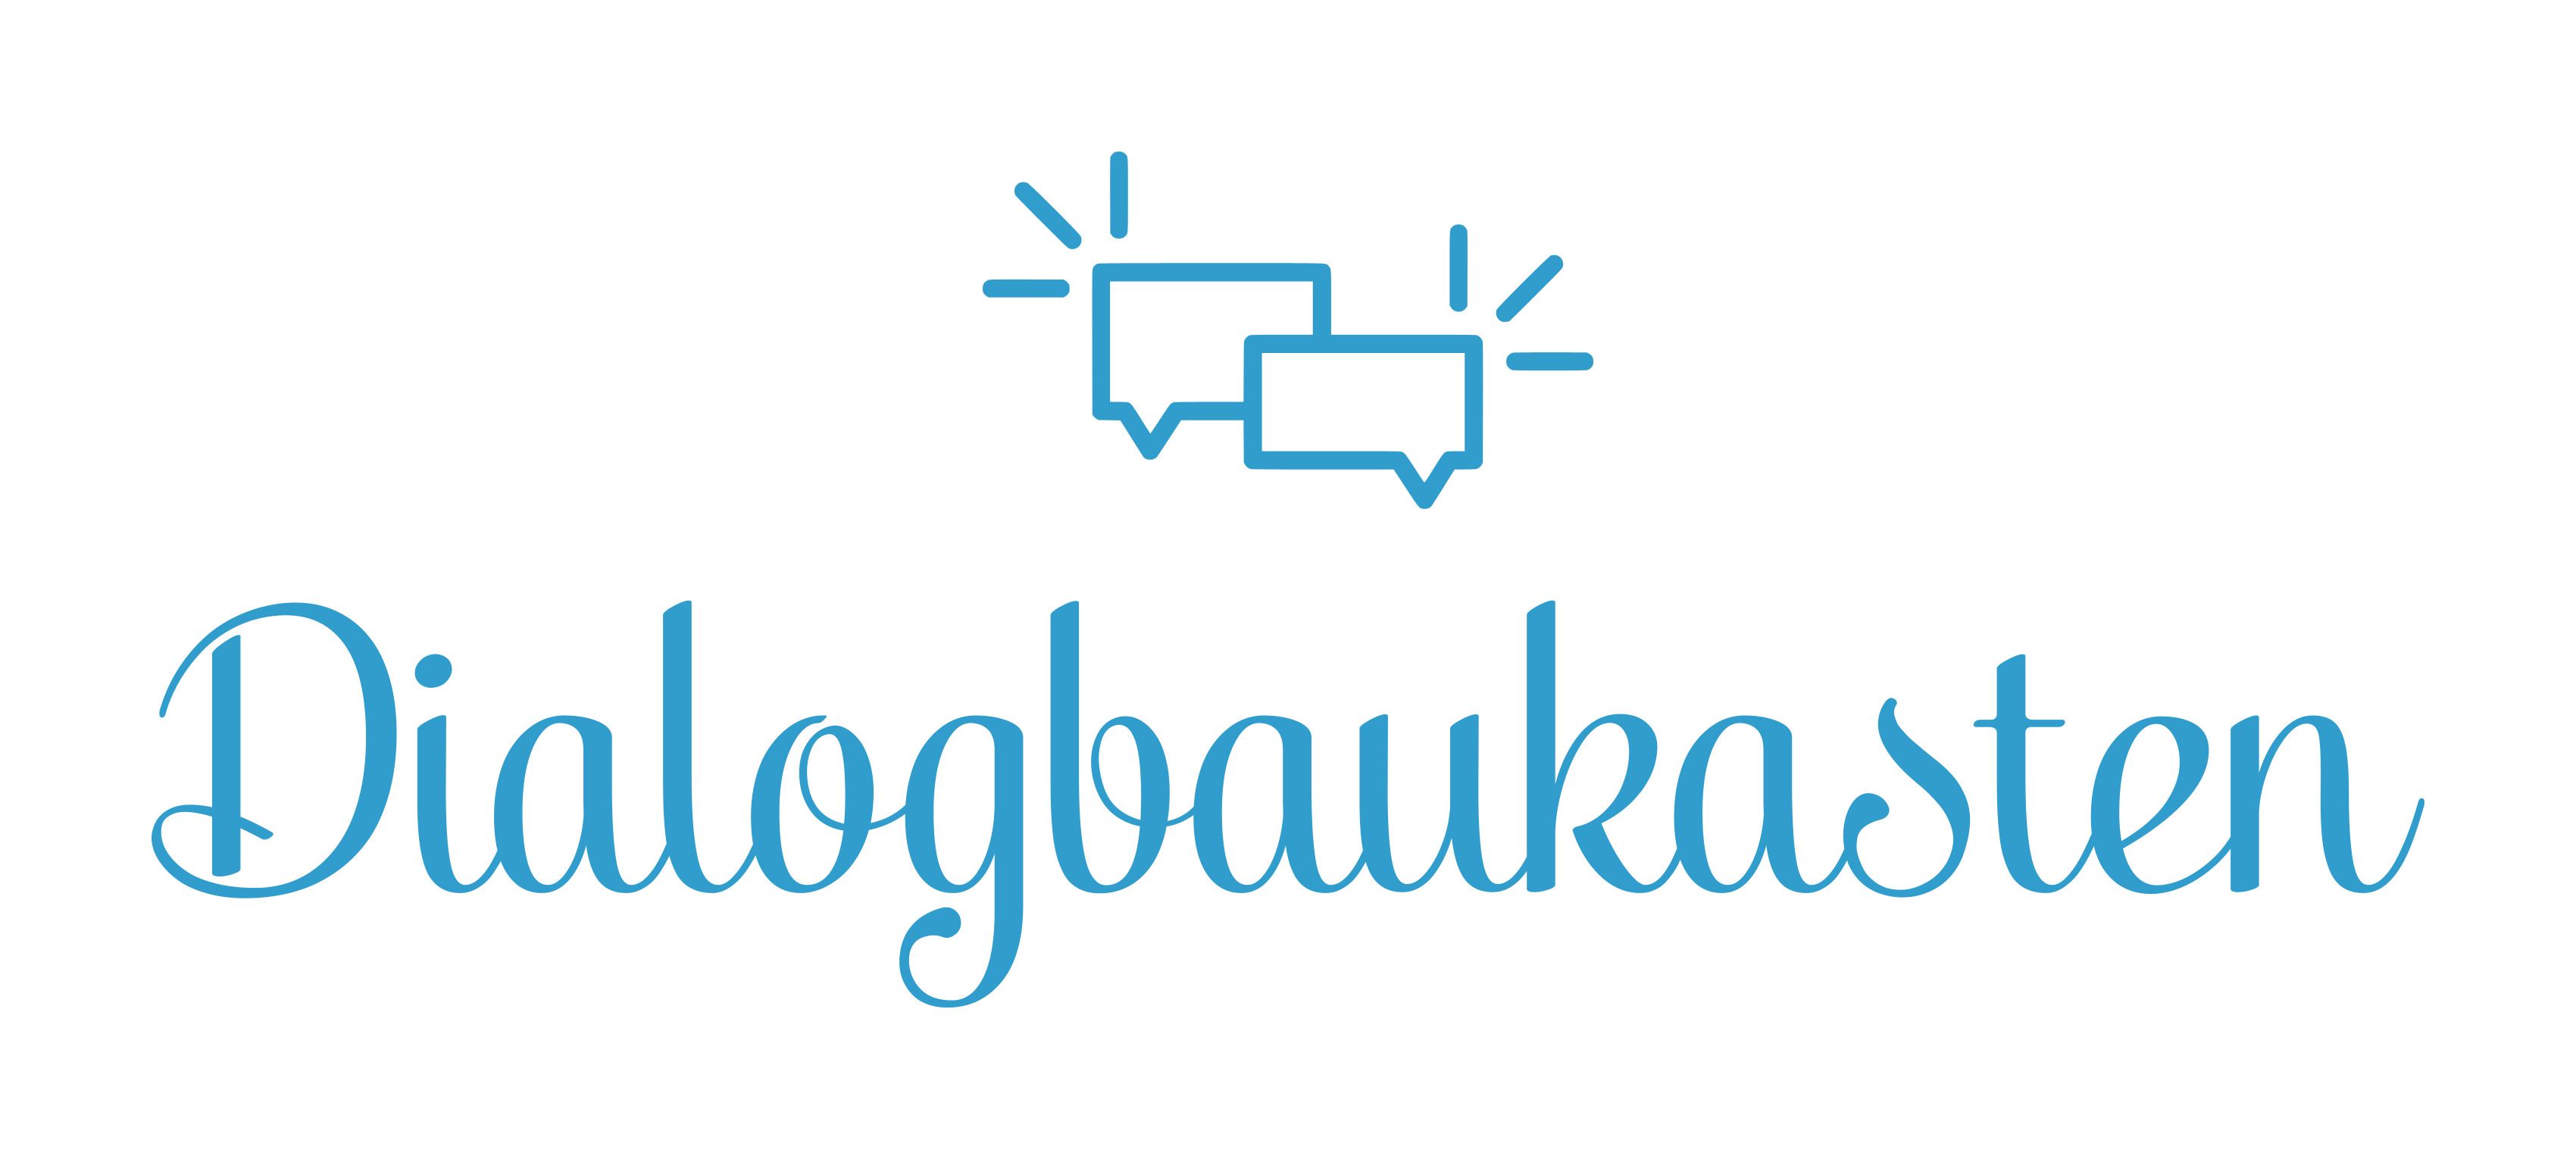 Dialogbaukasten (Logo)